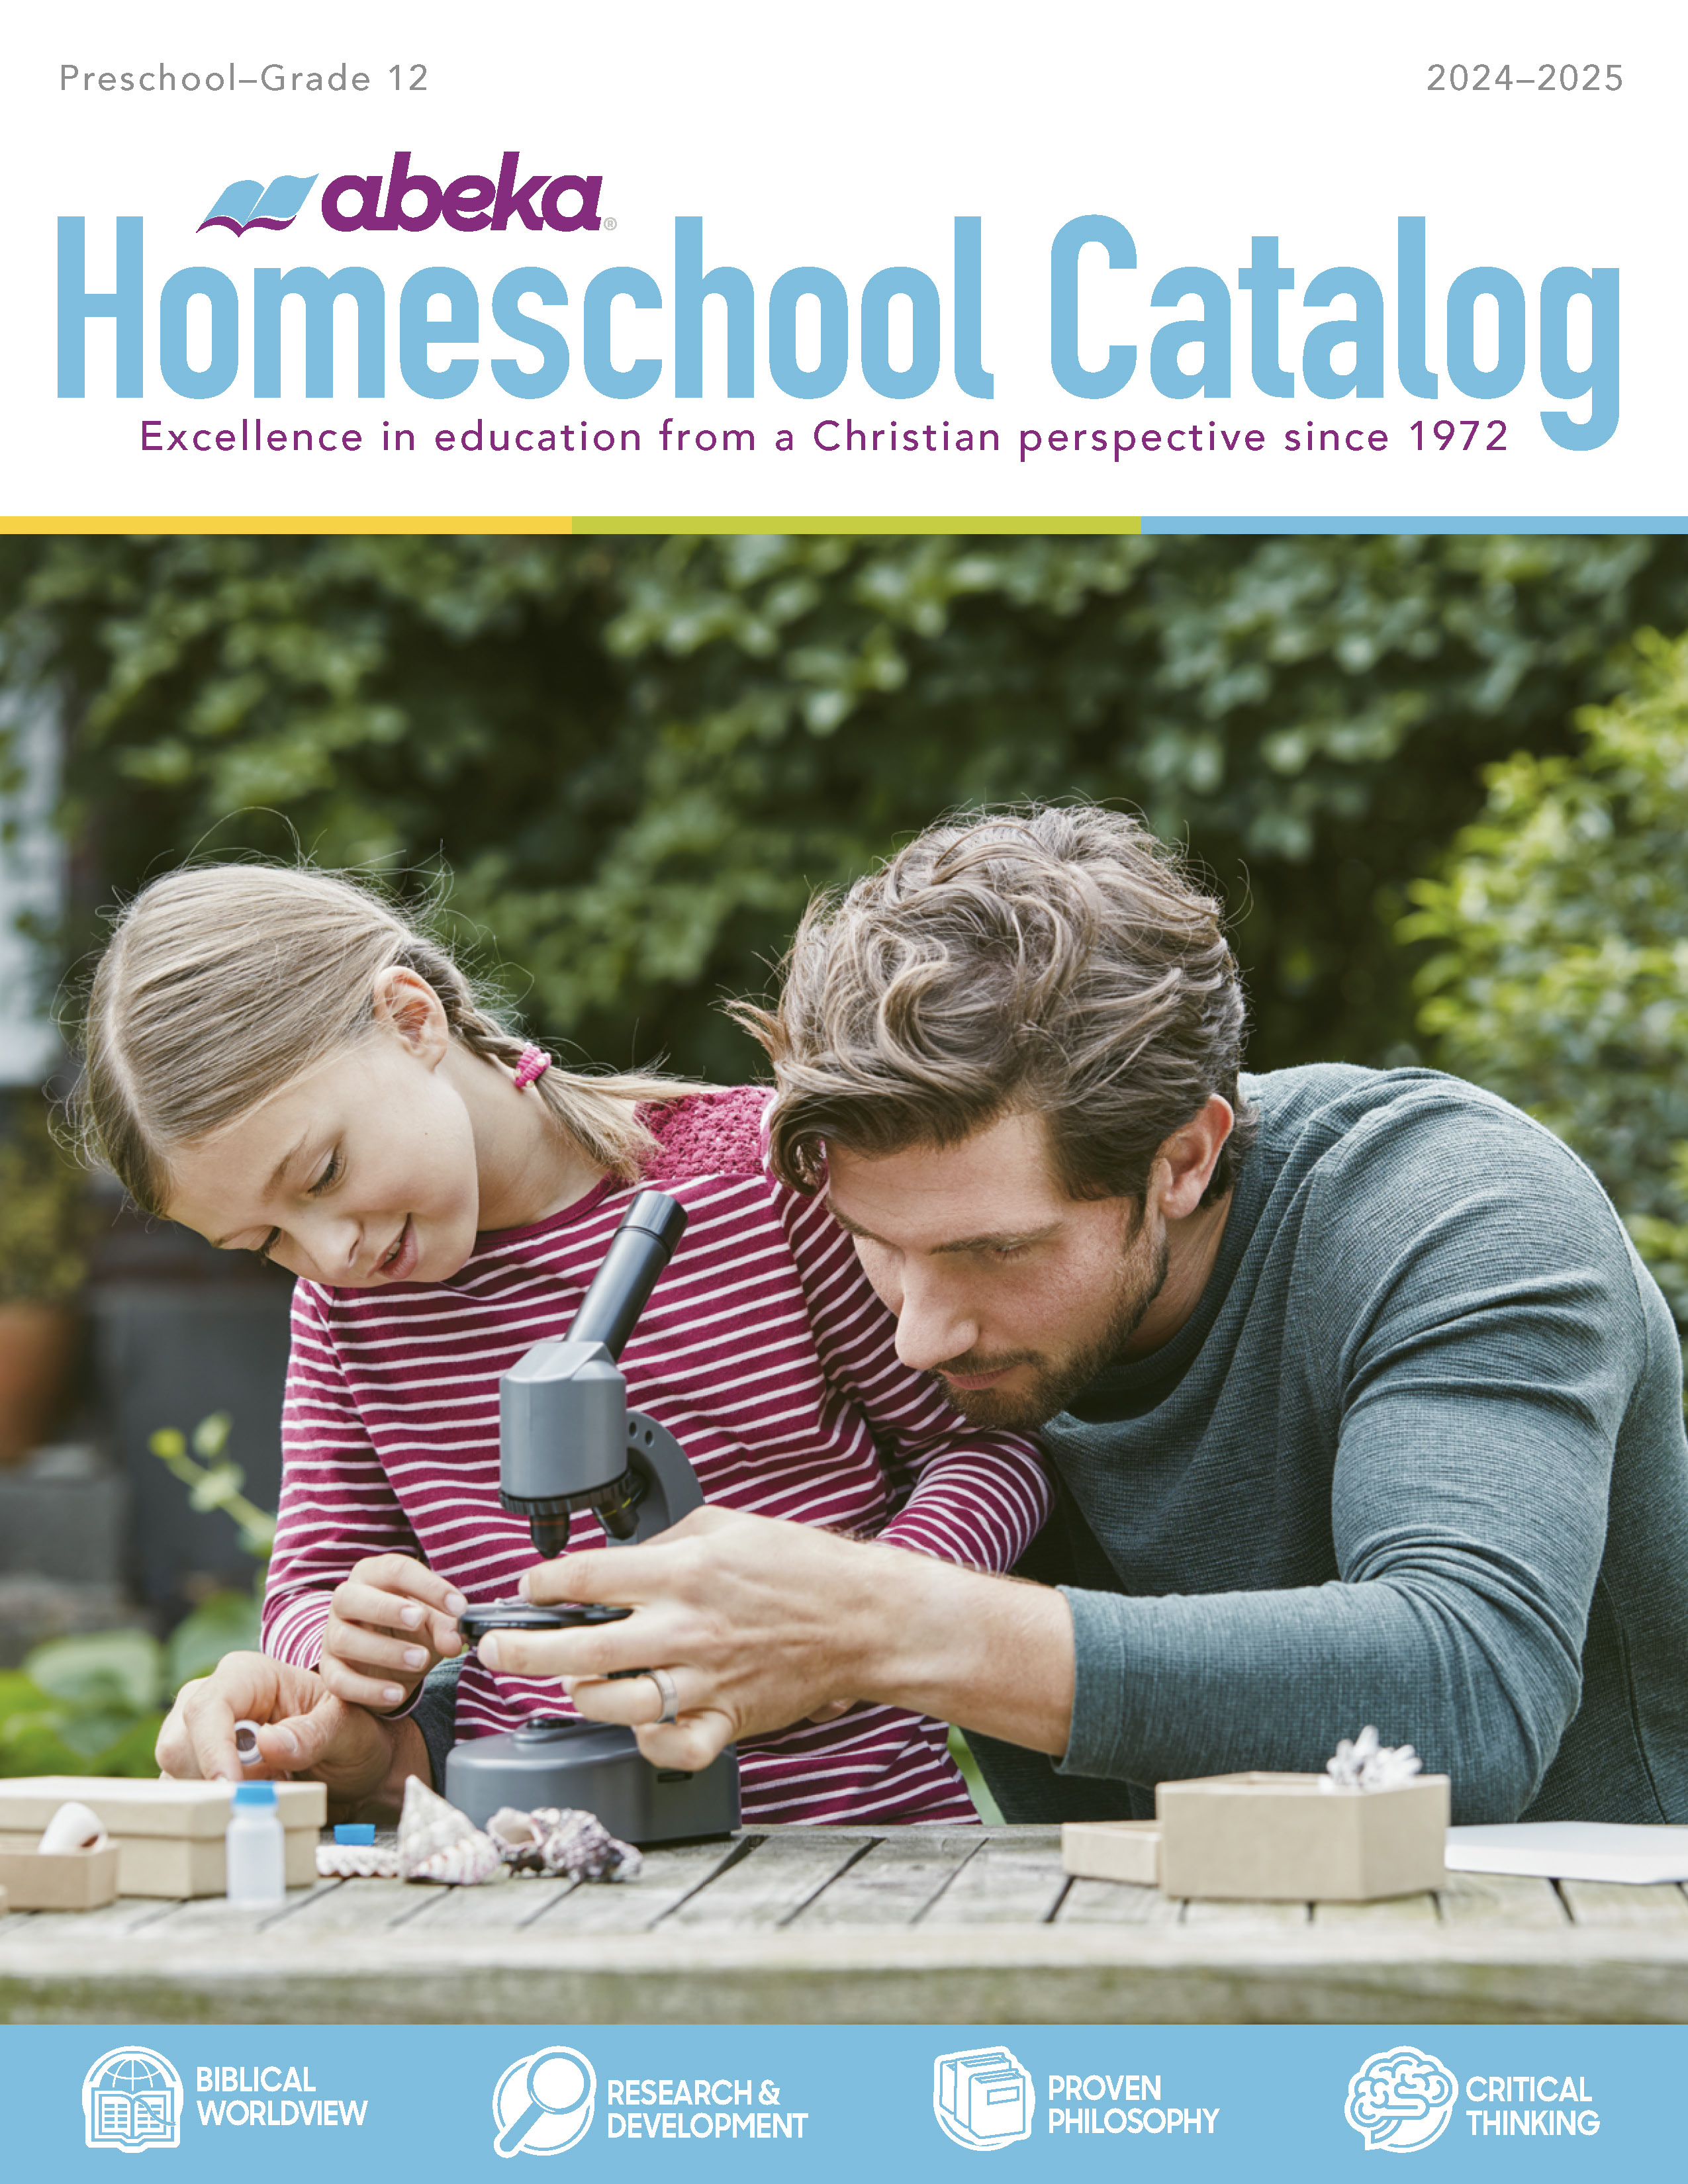 Abeka Homeschool Catalog Cover 2024